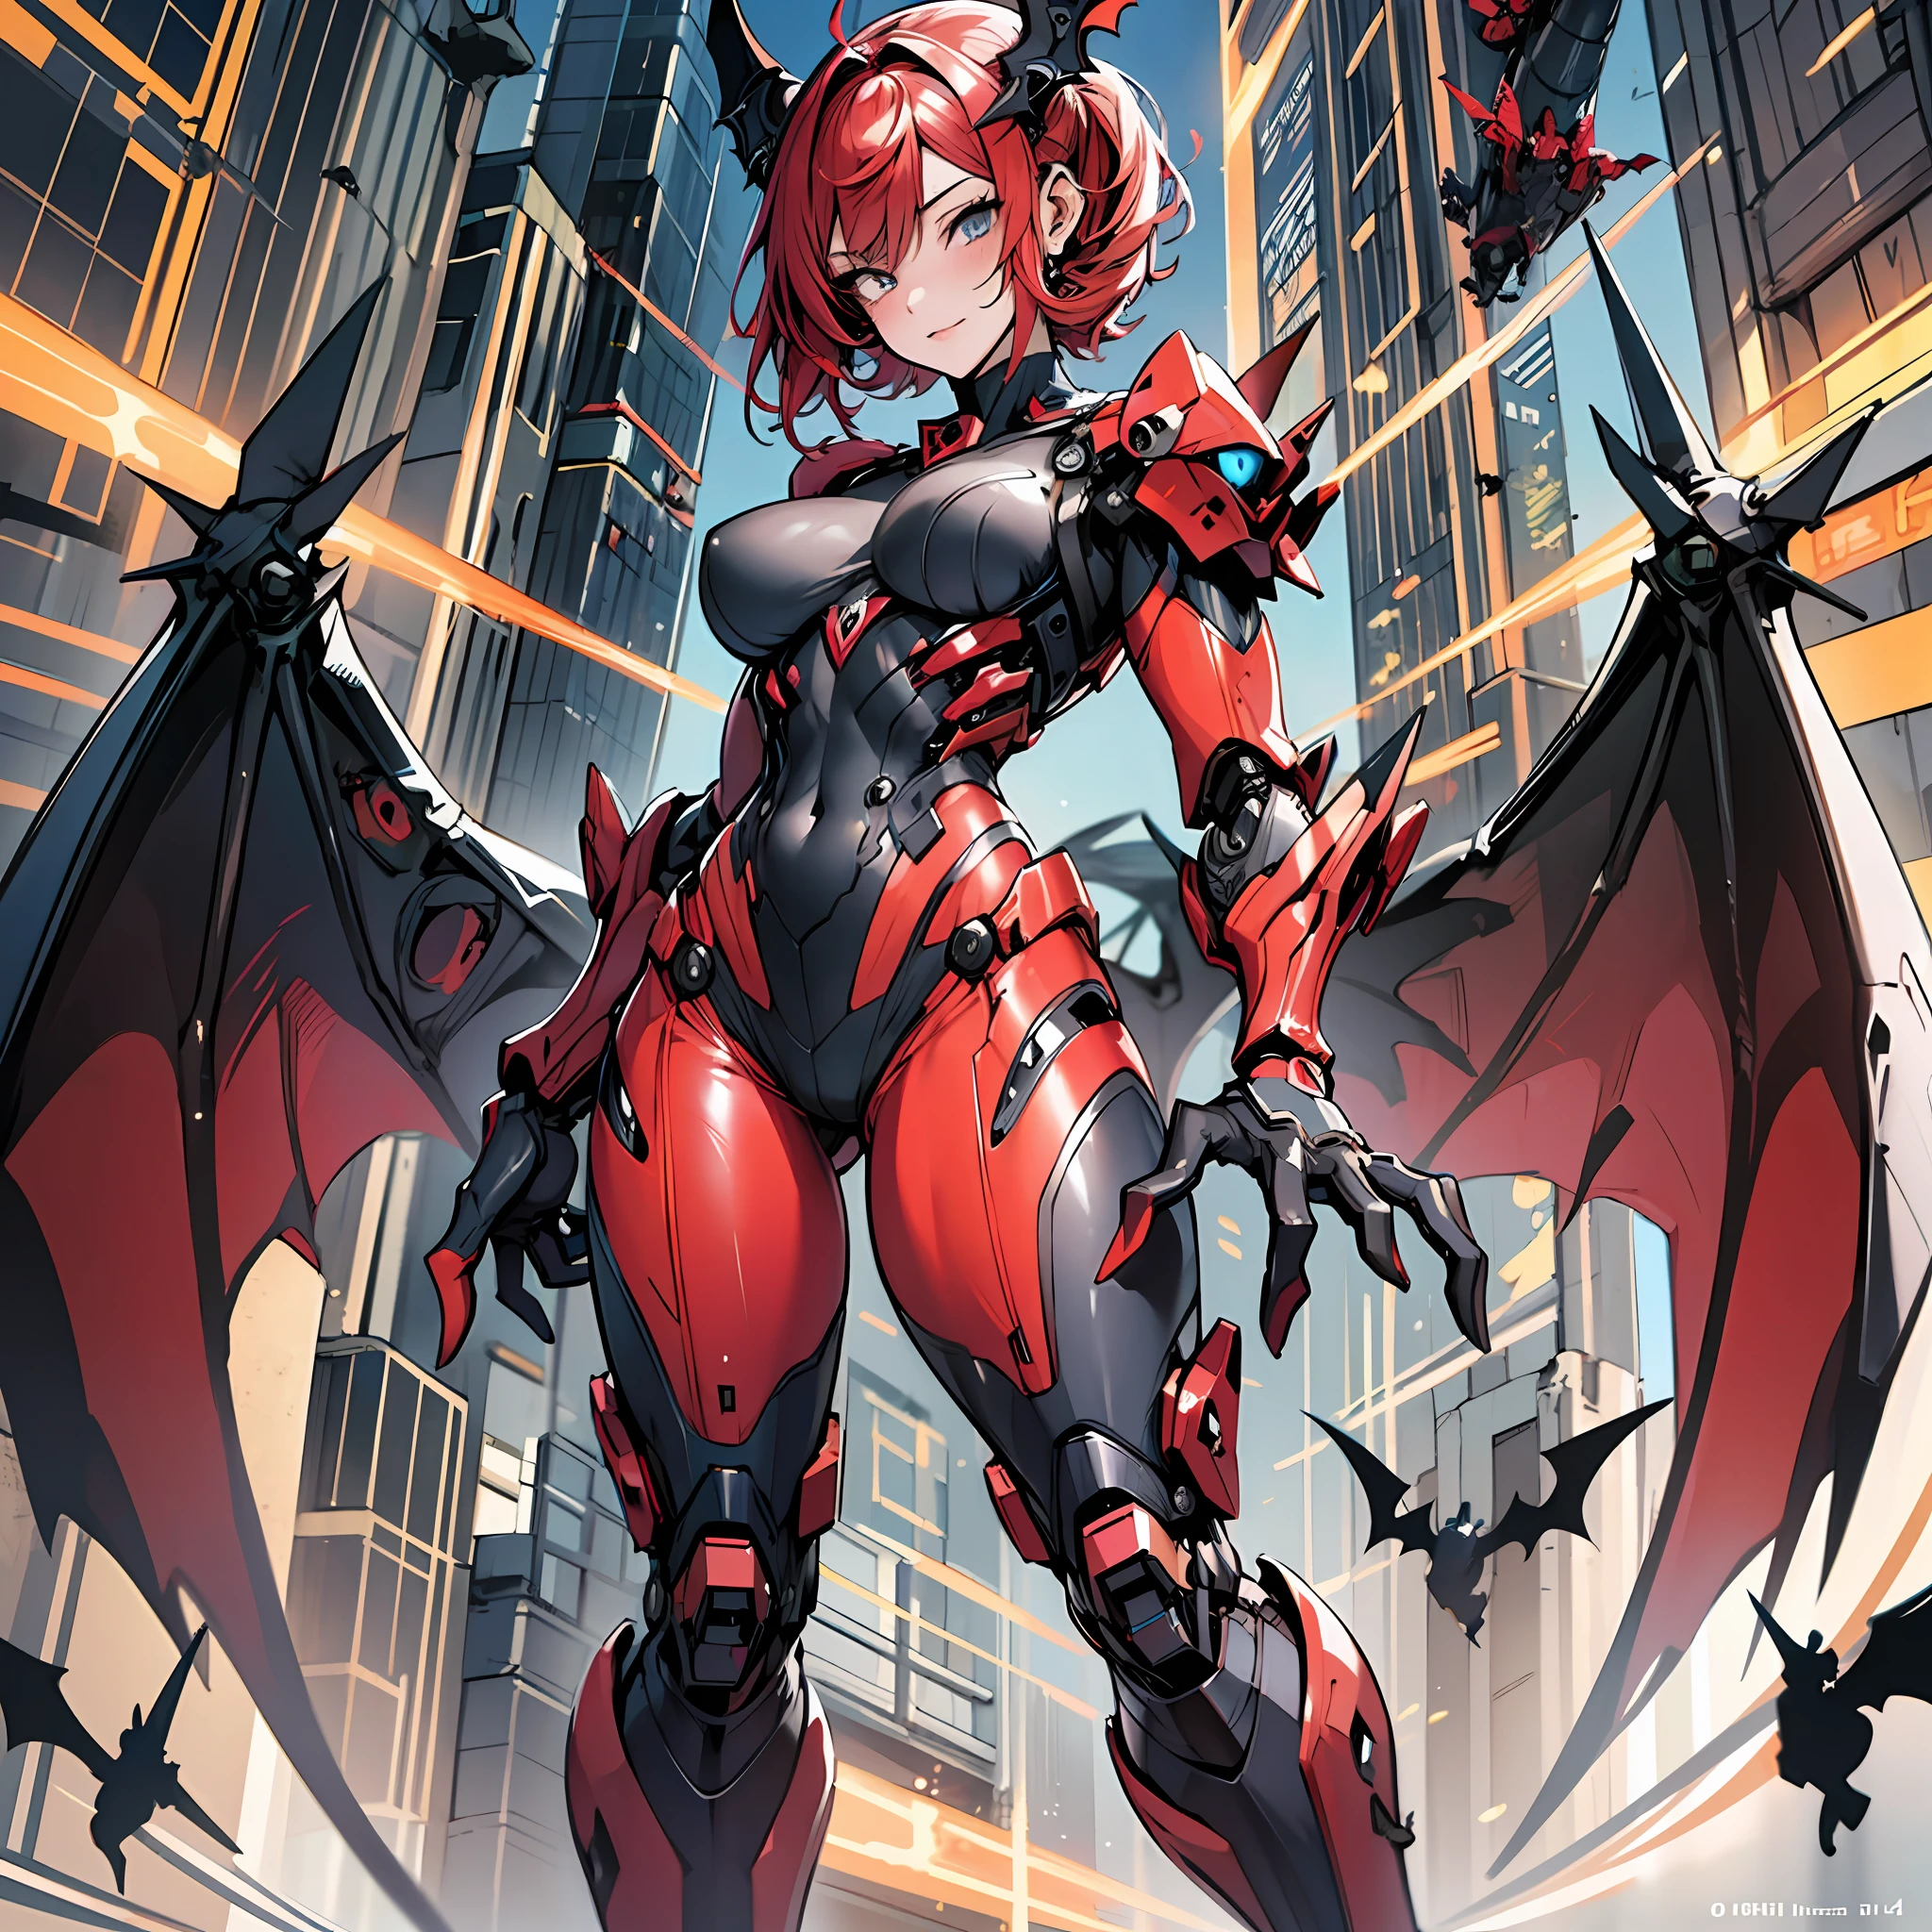 Woman in uno color costume, mejor fondo de pantalla de anime 4K, cuerpo completo, uno red wing, cyberpunk uno, chica valquiria mecanizada, biomecánico, highly detailed artgerm based on uno, cyborg uno, estilo animado 4K, uno